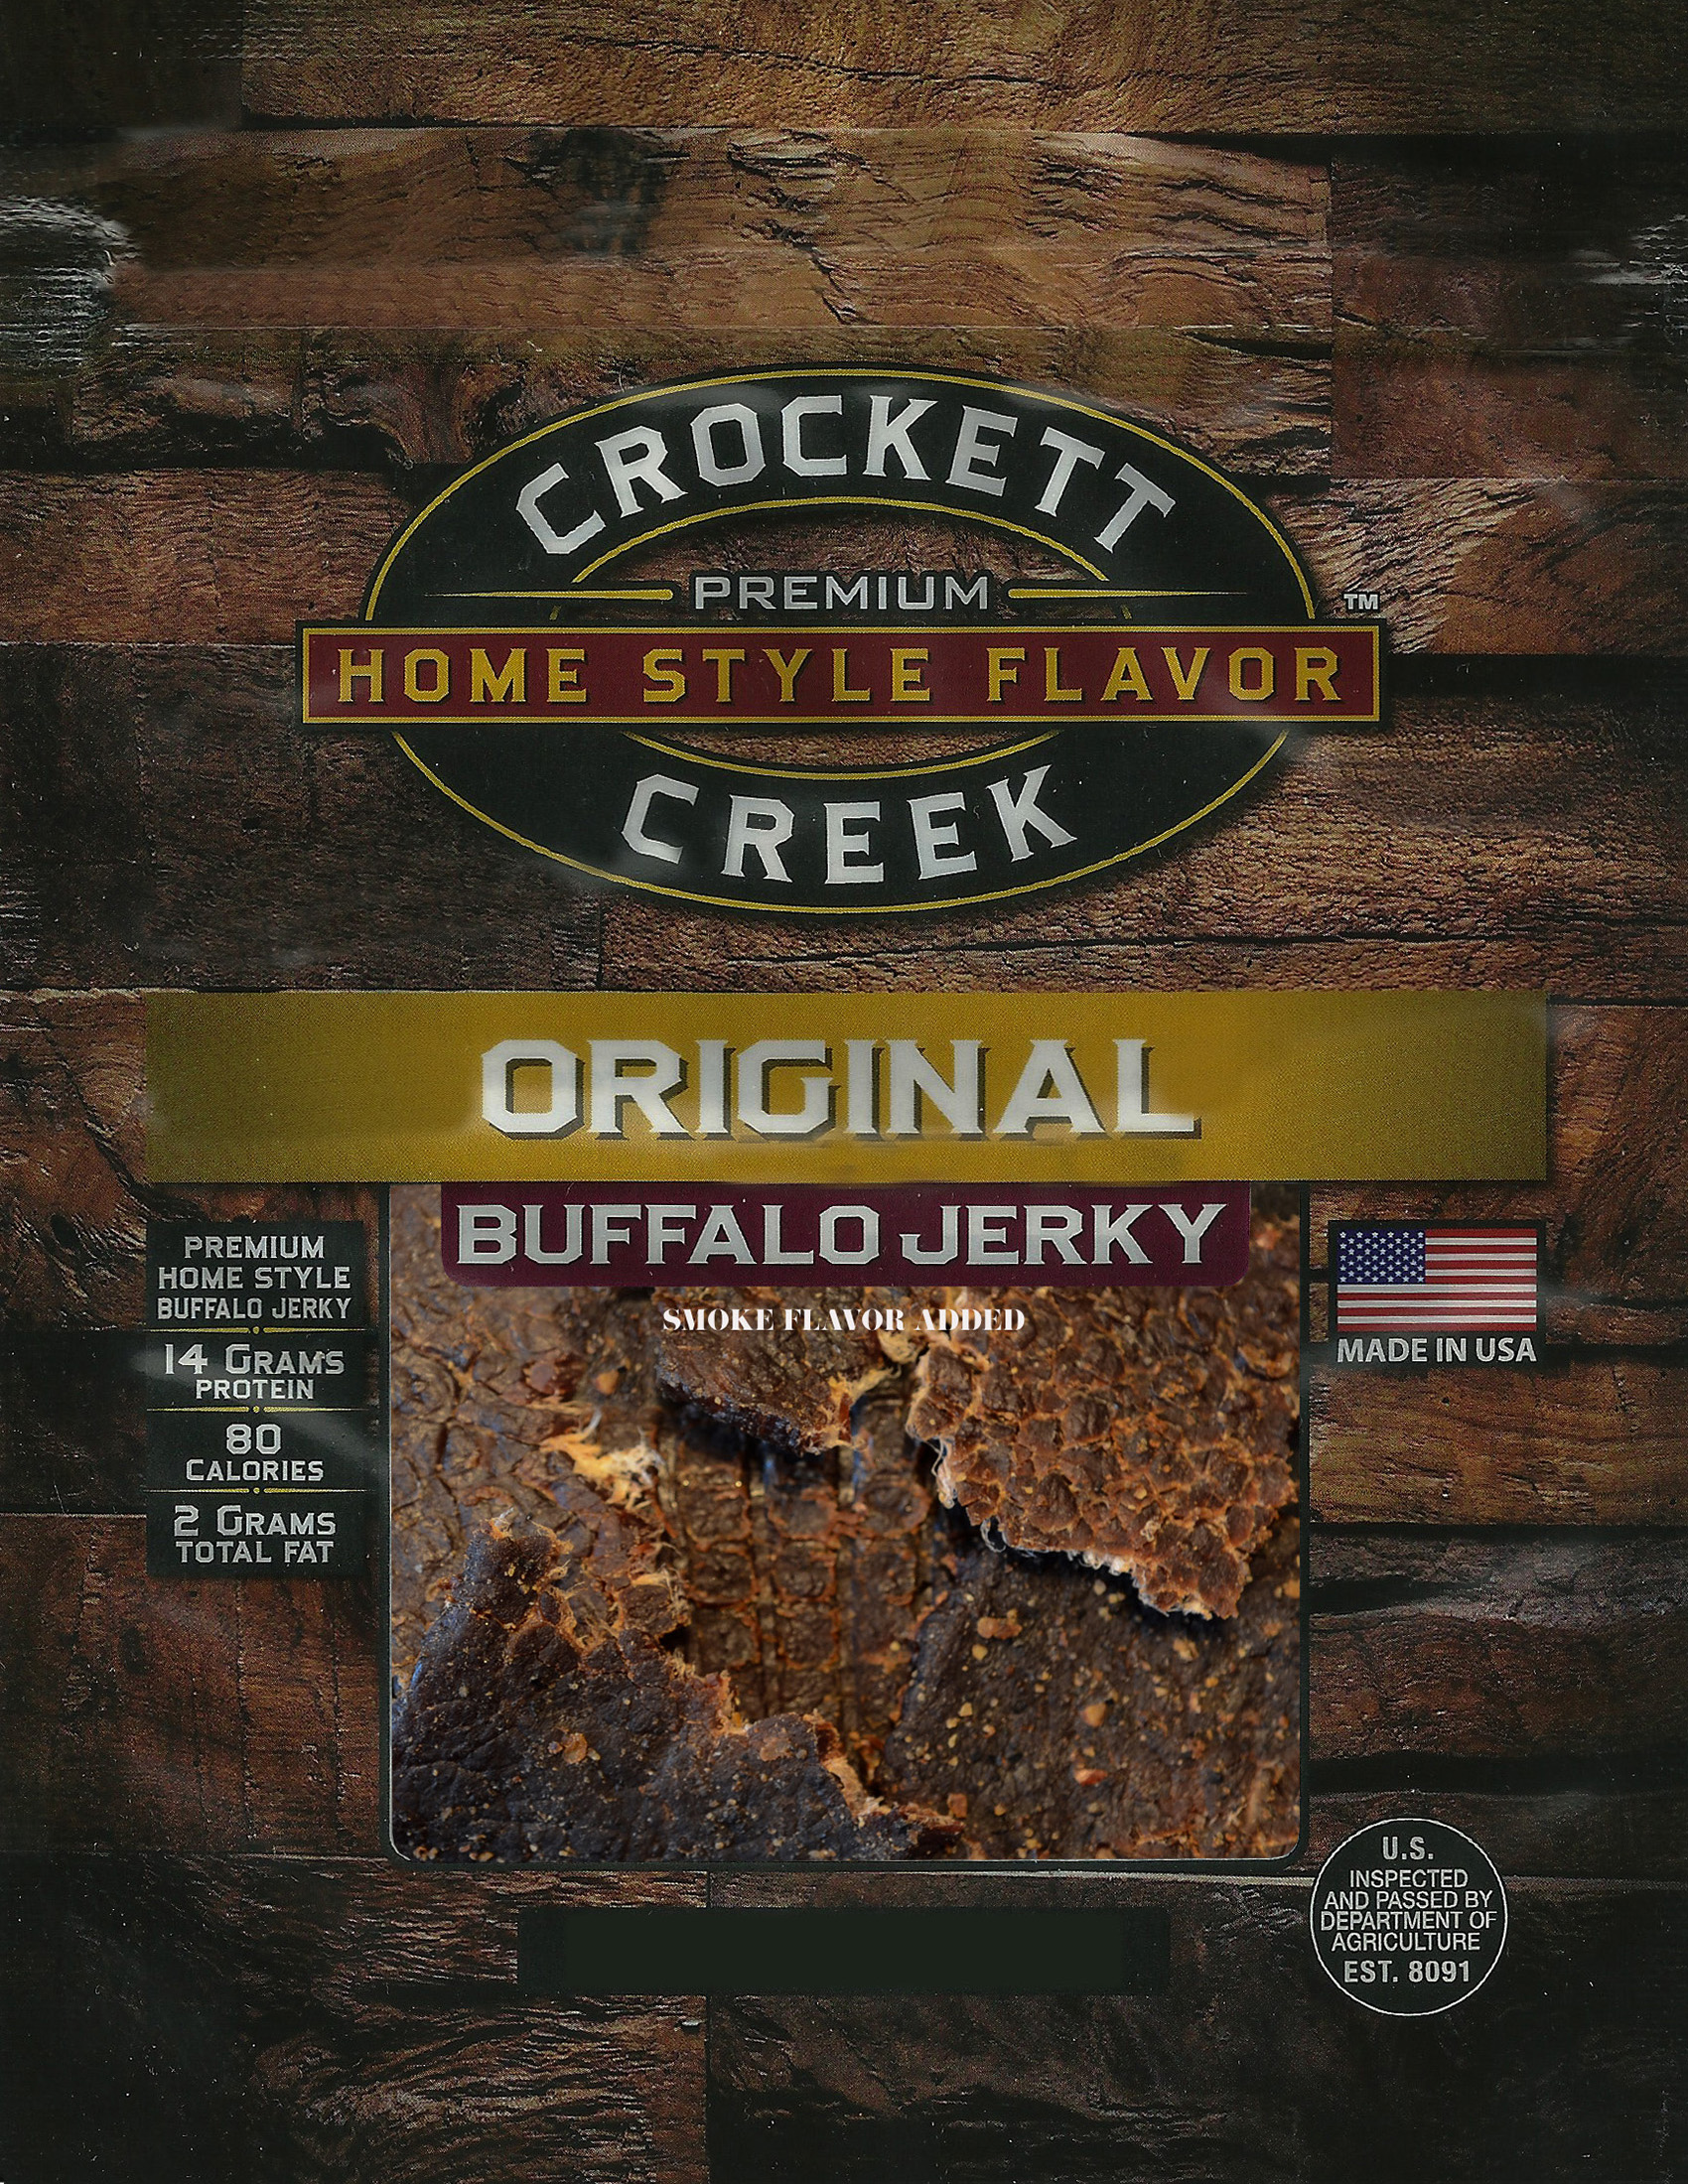 Crockett Creek Original Buffalo Jerky